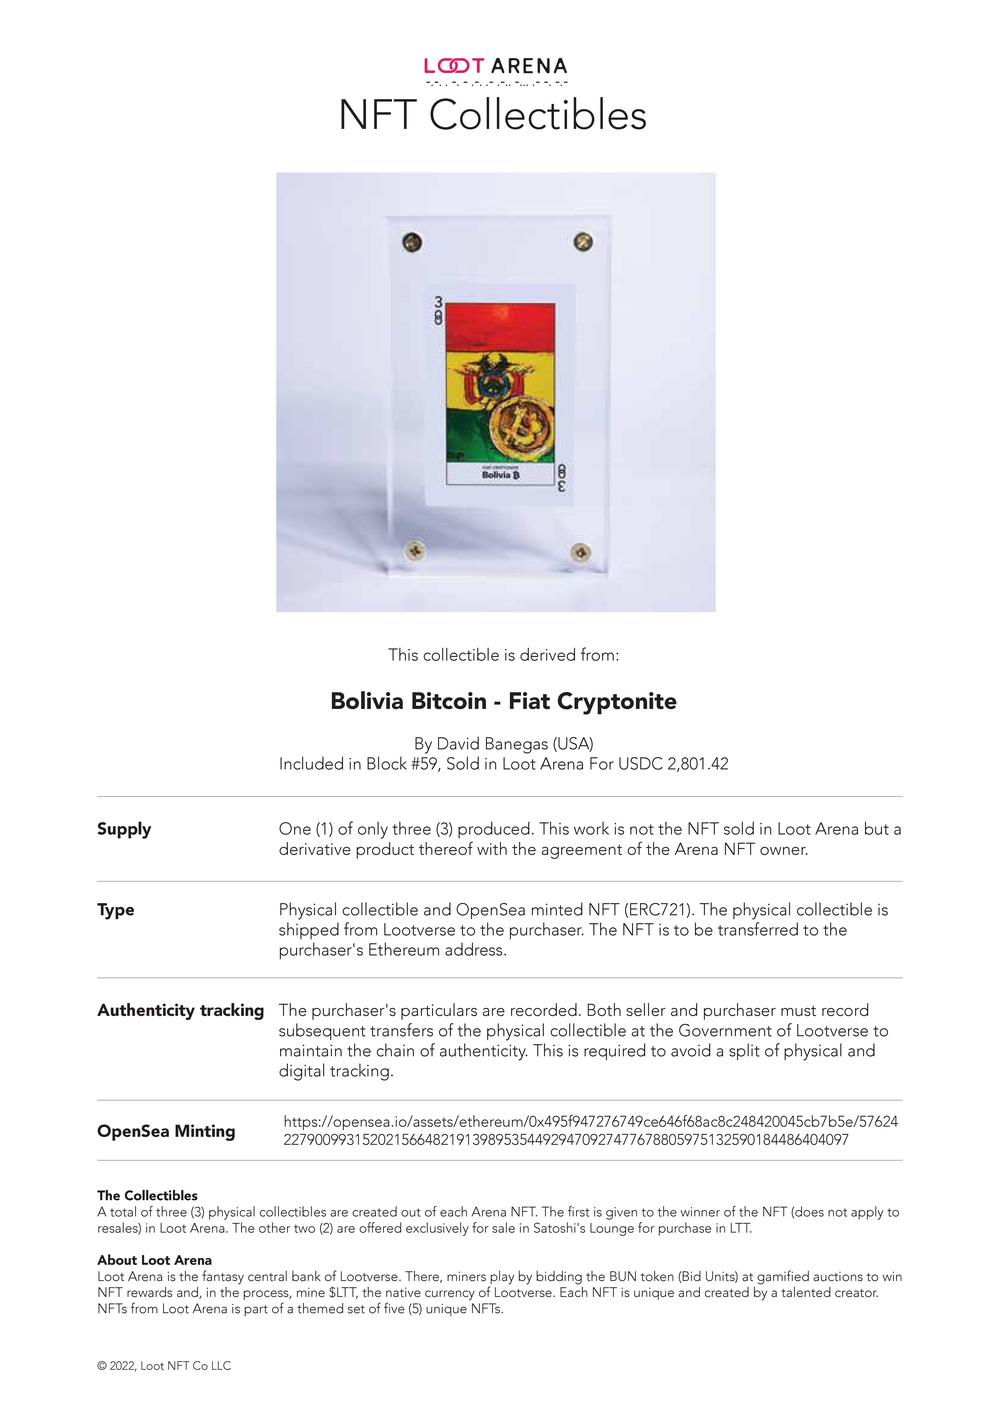 Contract_Bolivia Bitcoin.pdf